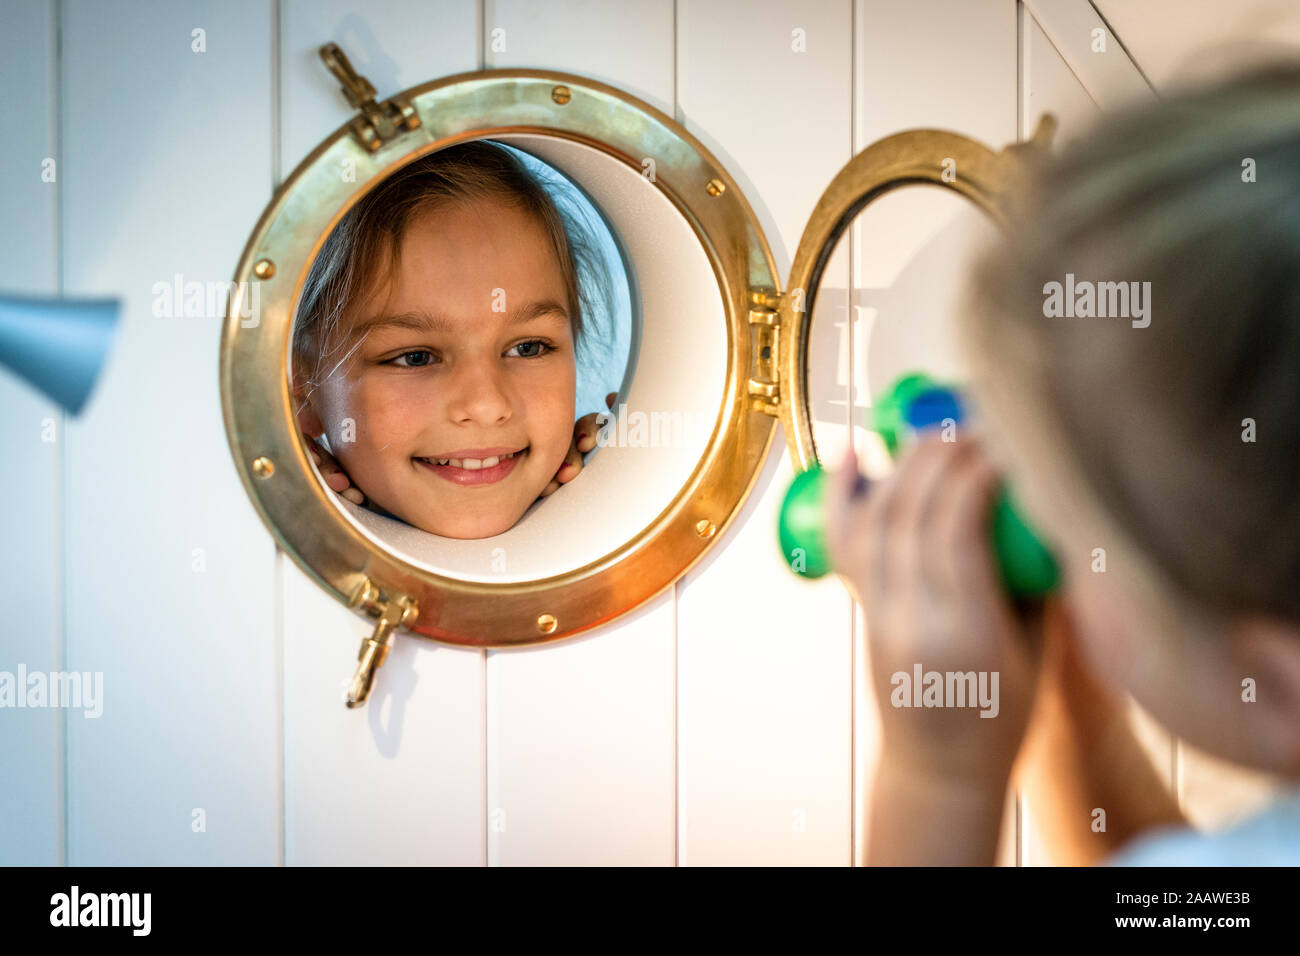 Smiling girl looking through porthole Stock Photo